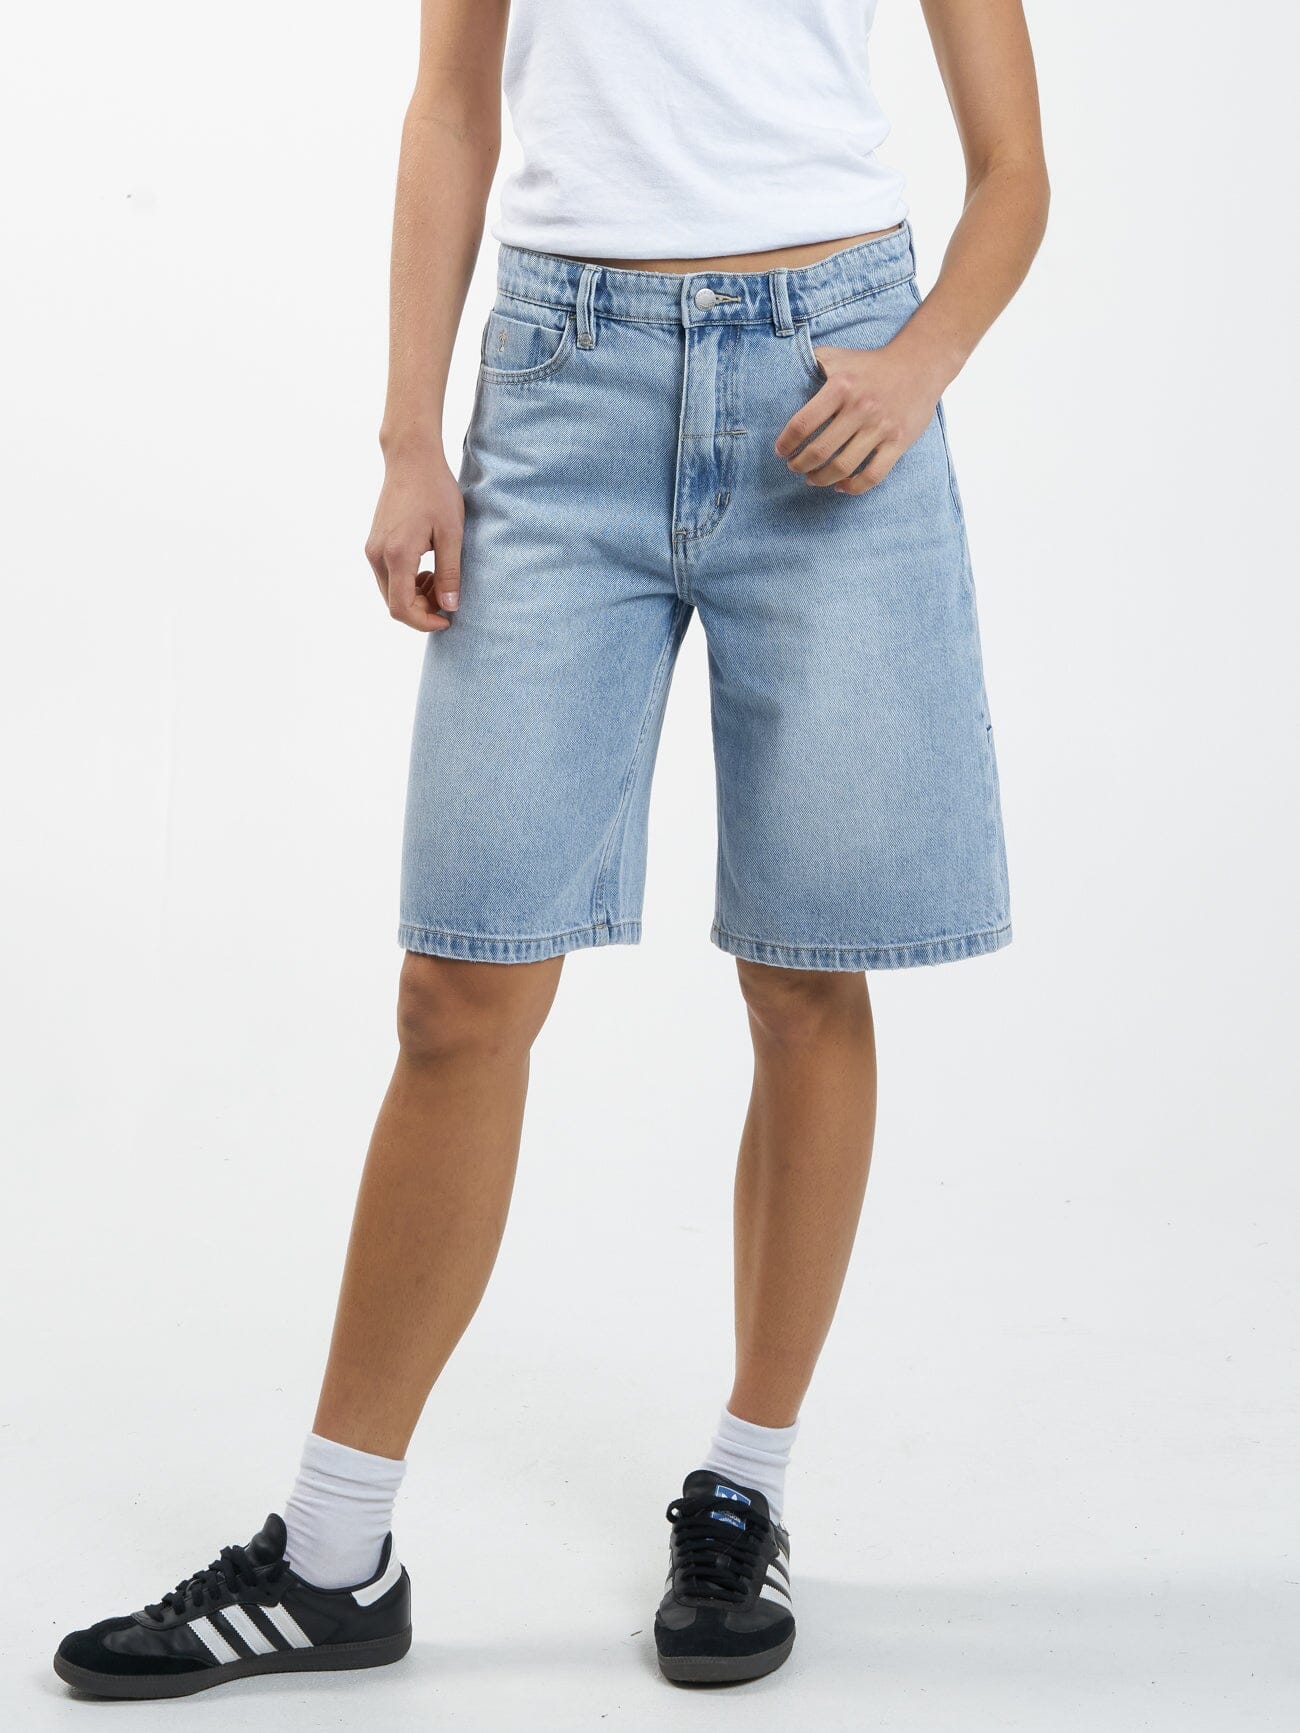 Shop Ladies Denim Shorts, Skirts & Jeans Online Australia - Scanlan Theodore